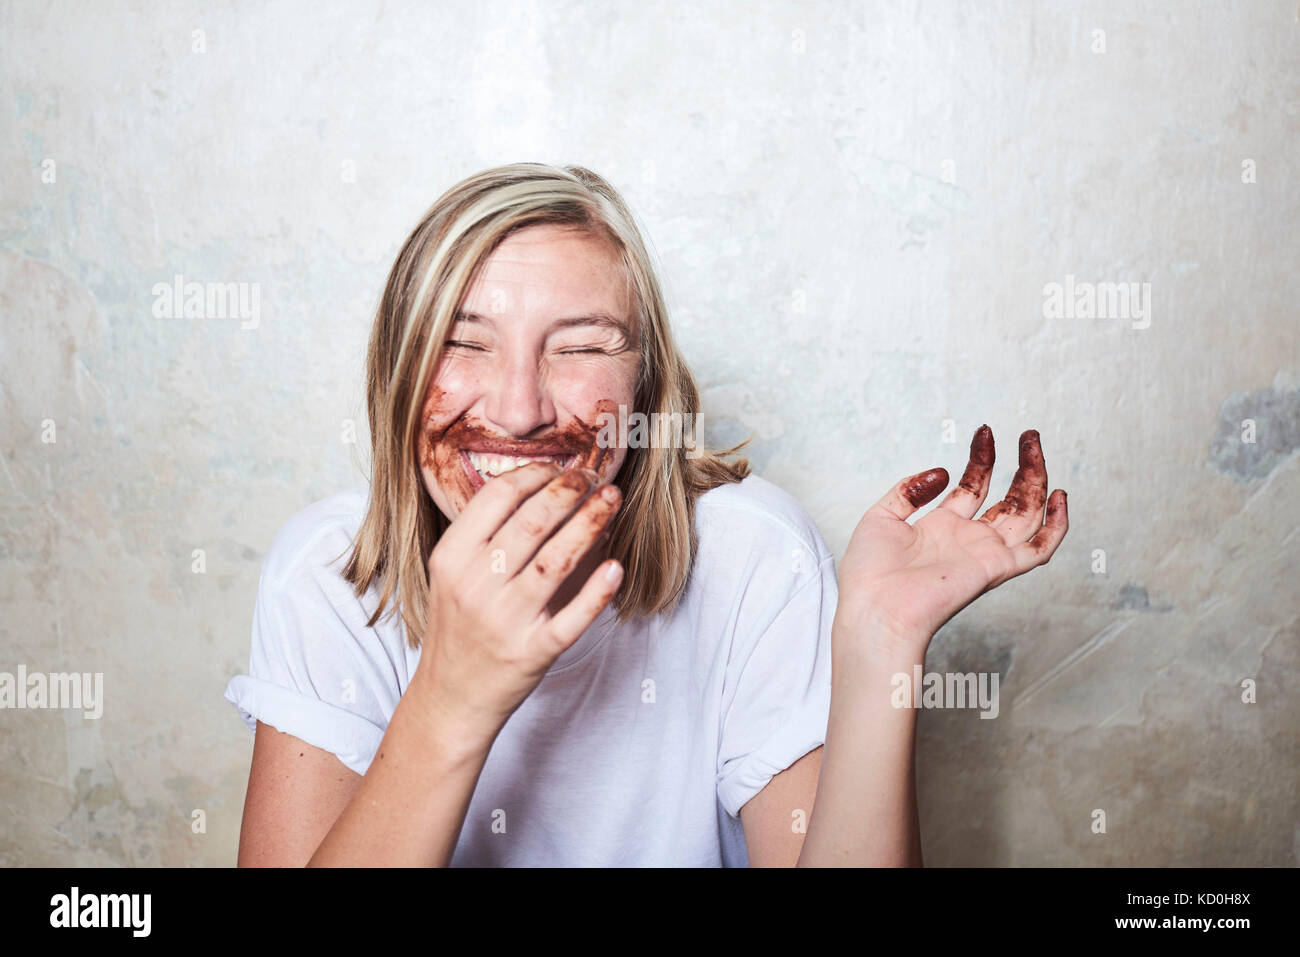 Portrait von Frau mit Schokolade an den Händen und um den Mund, Lachen Stockfoto